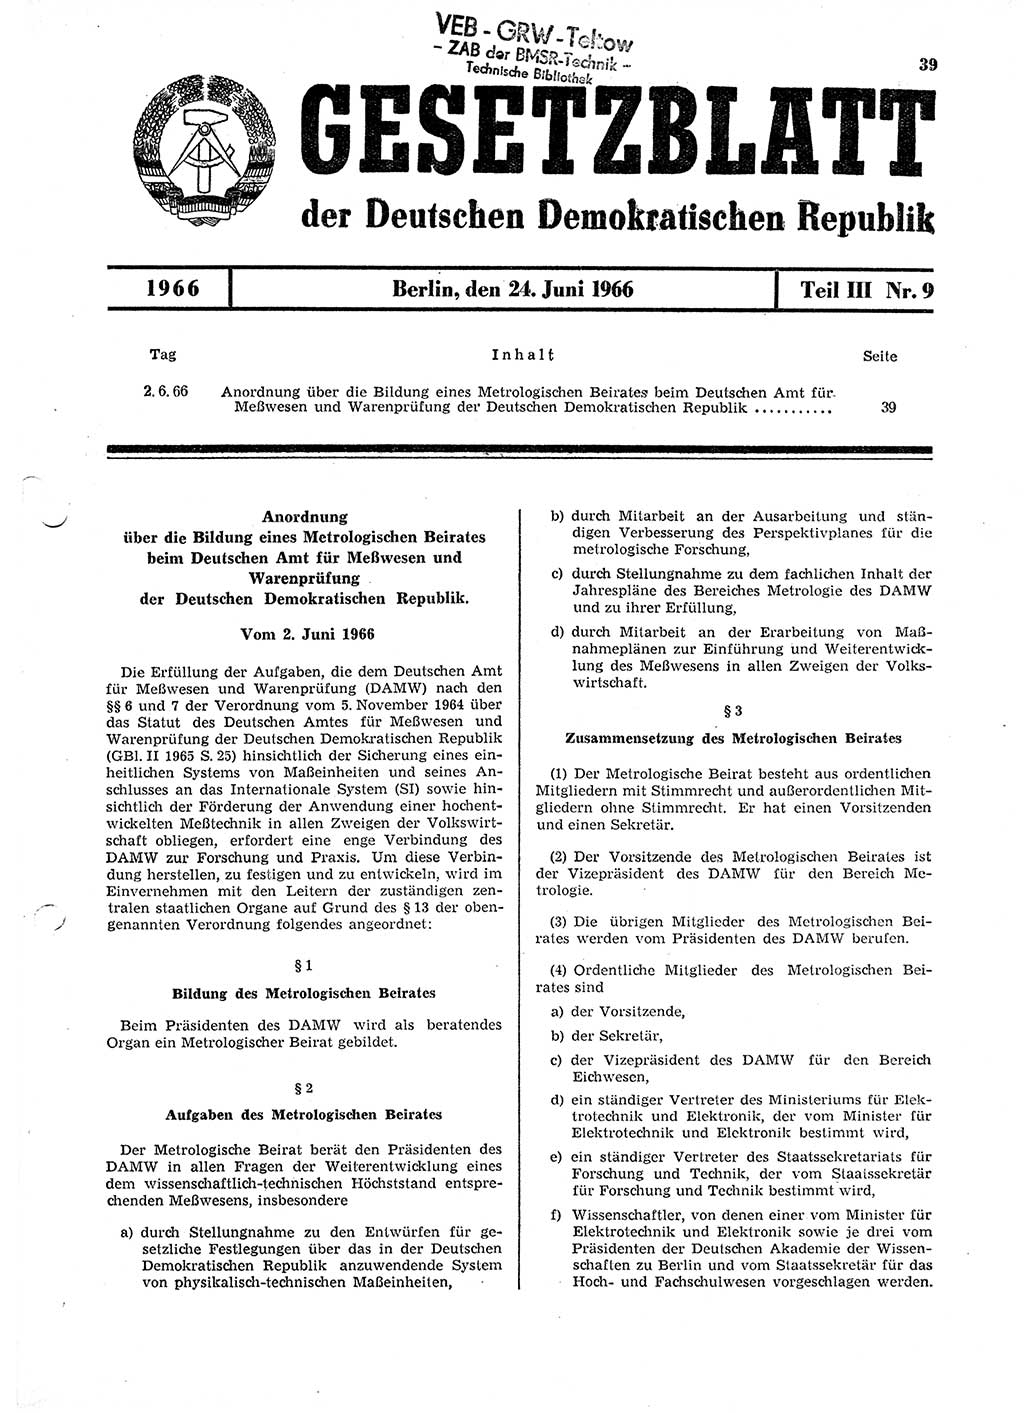 Gesetzblatt (GBl.) der Deutschen Demokratischen Republik (DDR) Teil ⅠⅠⅠ 1966, Seite 39 (GBl. DDR ⅠⅠⅠ 1966, S. 39)